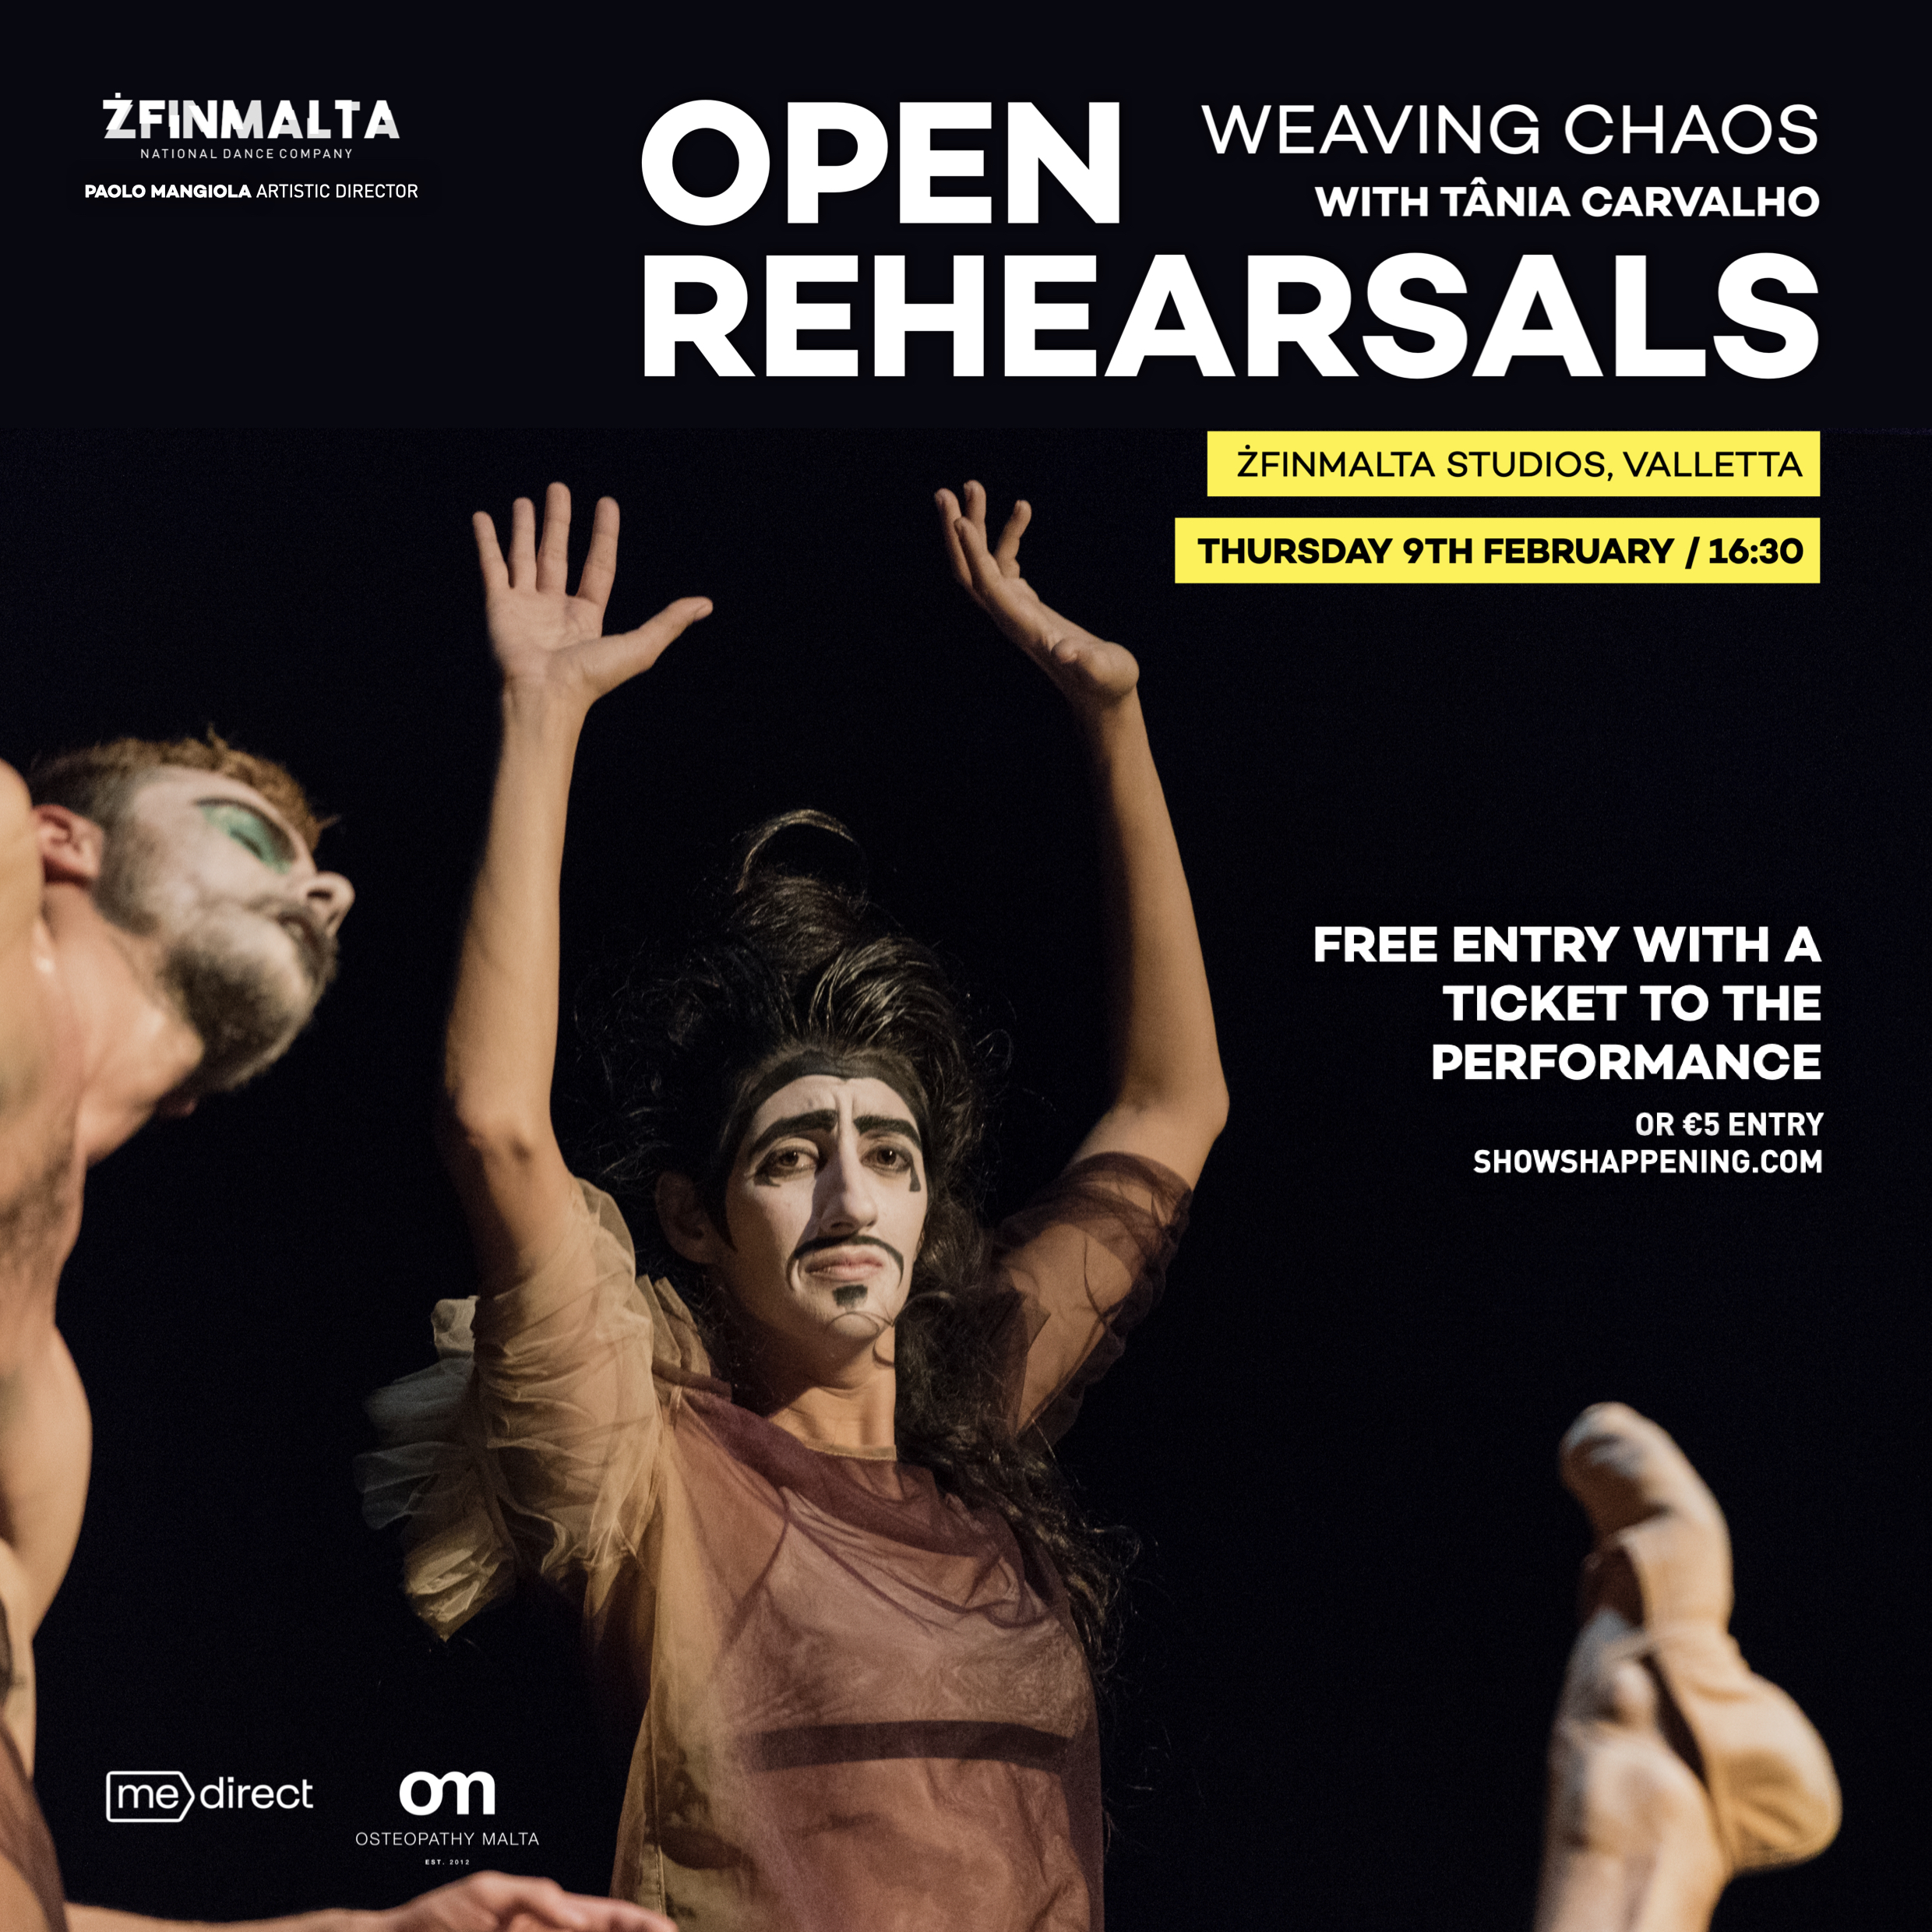 ŻfinMalta open Rehearsal 9th February Weaving Chaos with Tania Carvalho